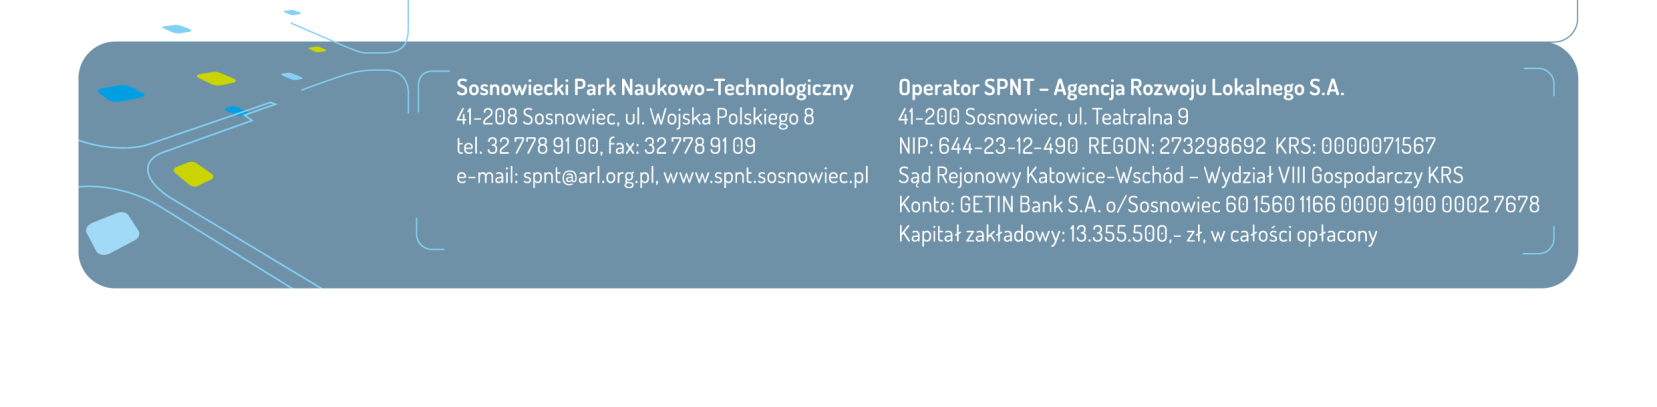 Media o SPNT 2013 r. 1. Kampania w Internecie w formie emisji banneru internetowego wraz z przekierowaniem do strony SPNT w serwisie naszemiasto.